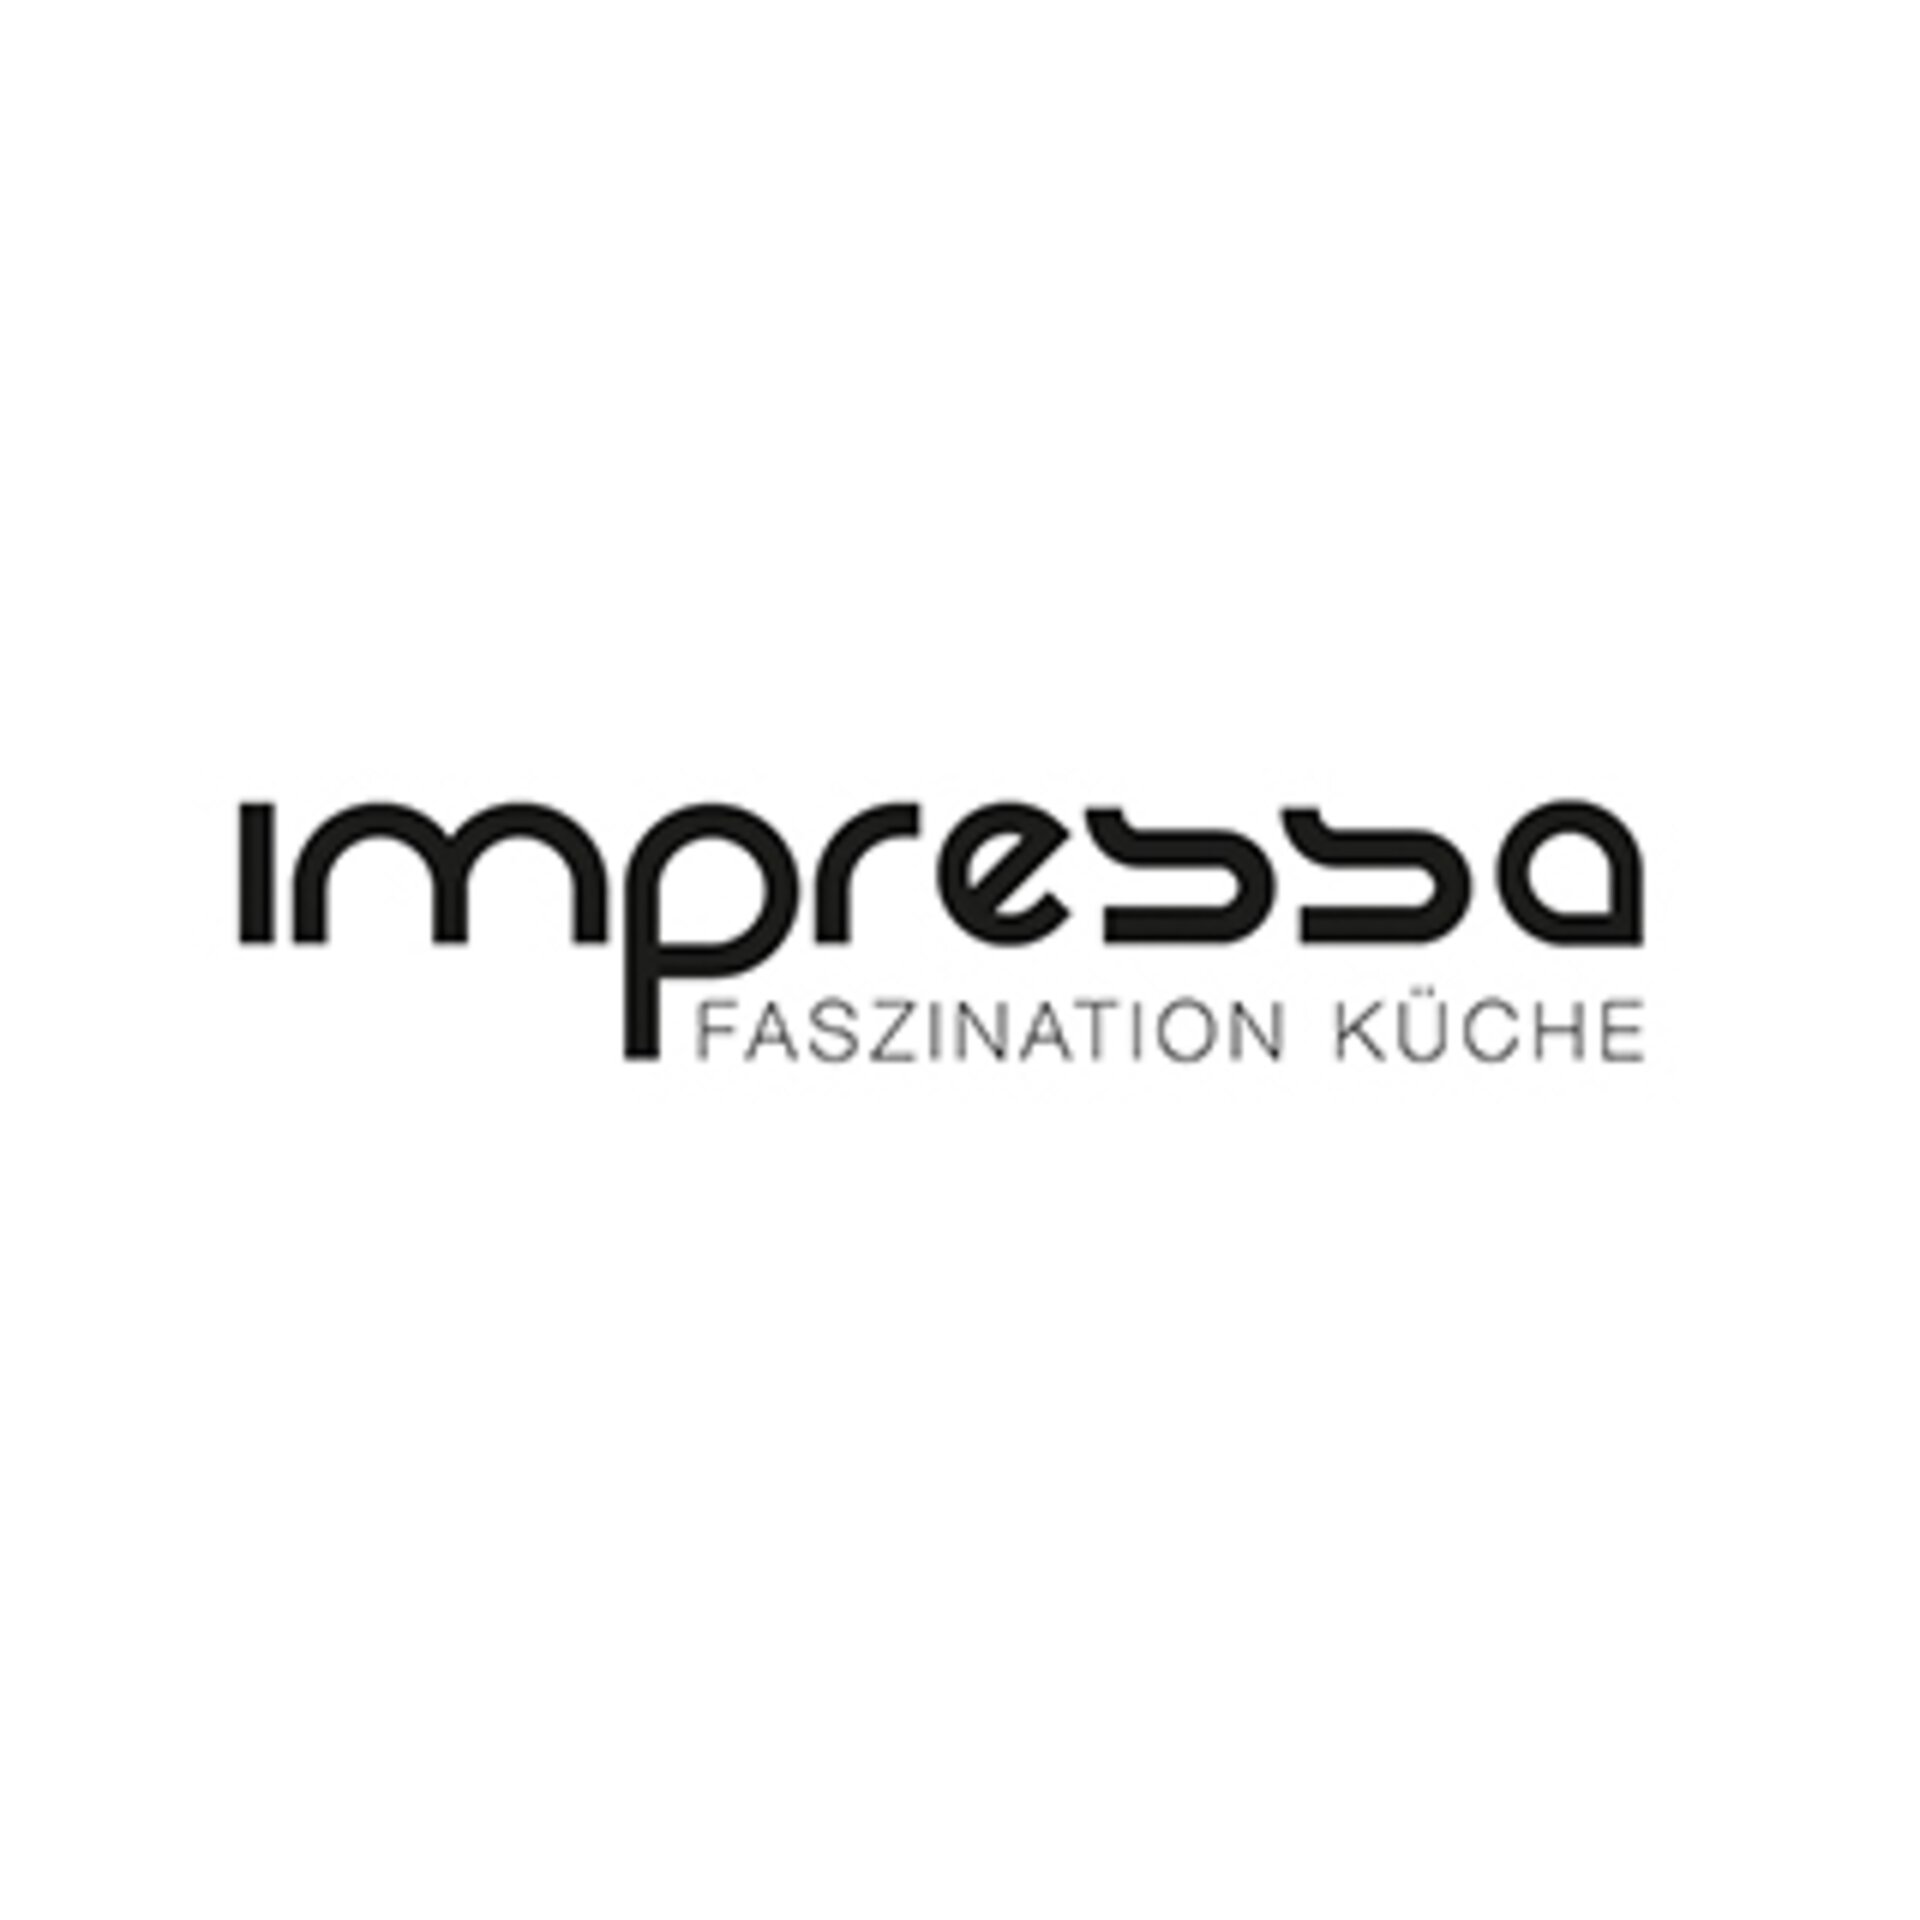 Logo "IMPRESSA - Faszination Küche"